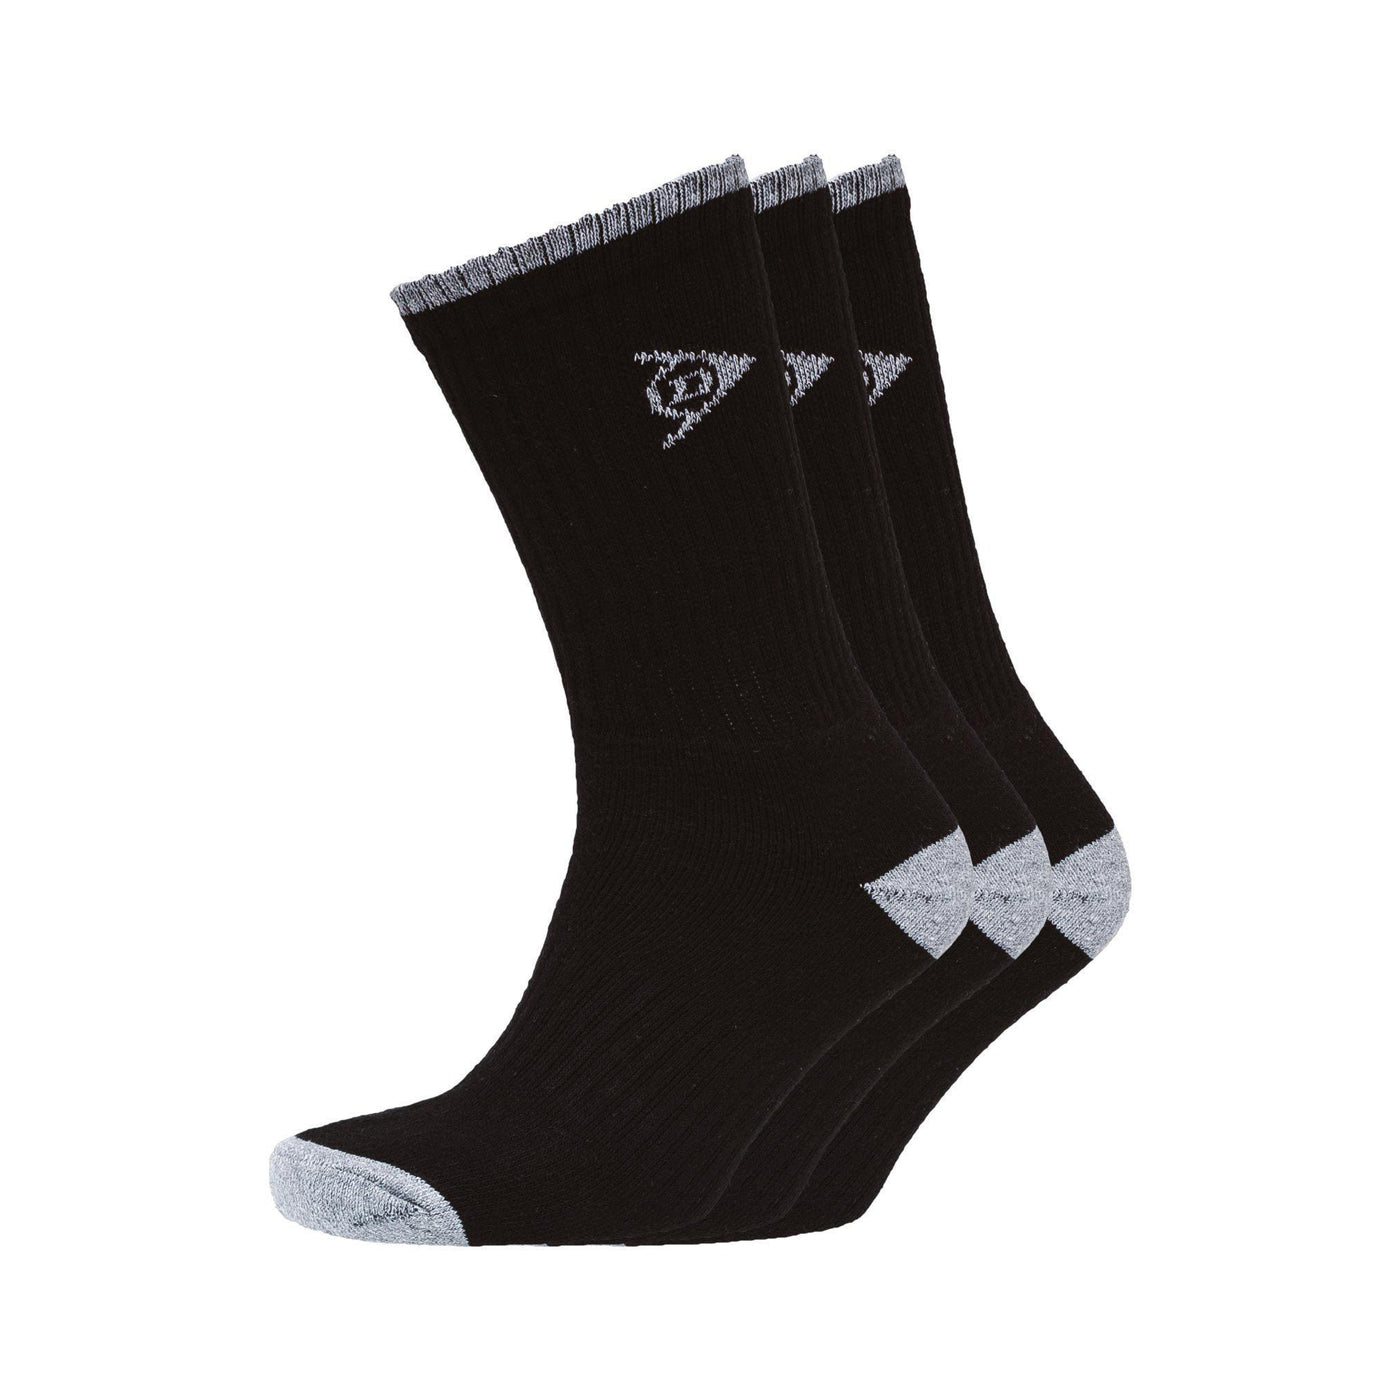 Shawlong Sports Socks 3Pk - Black Accessories